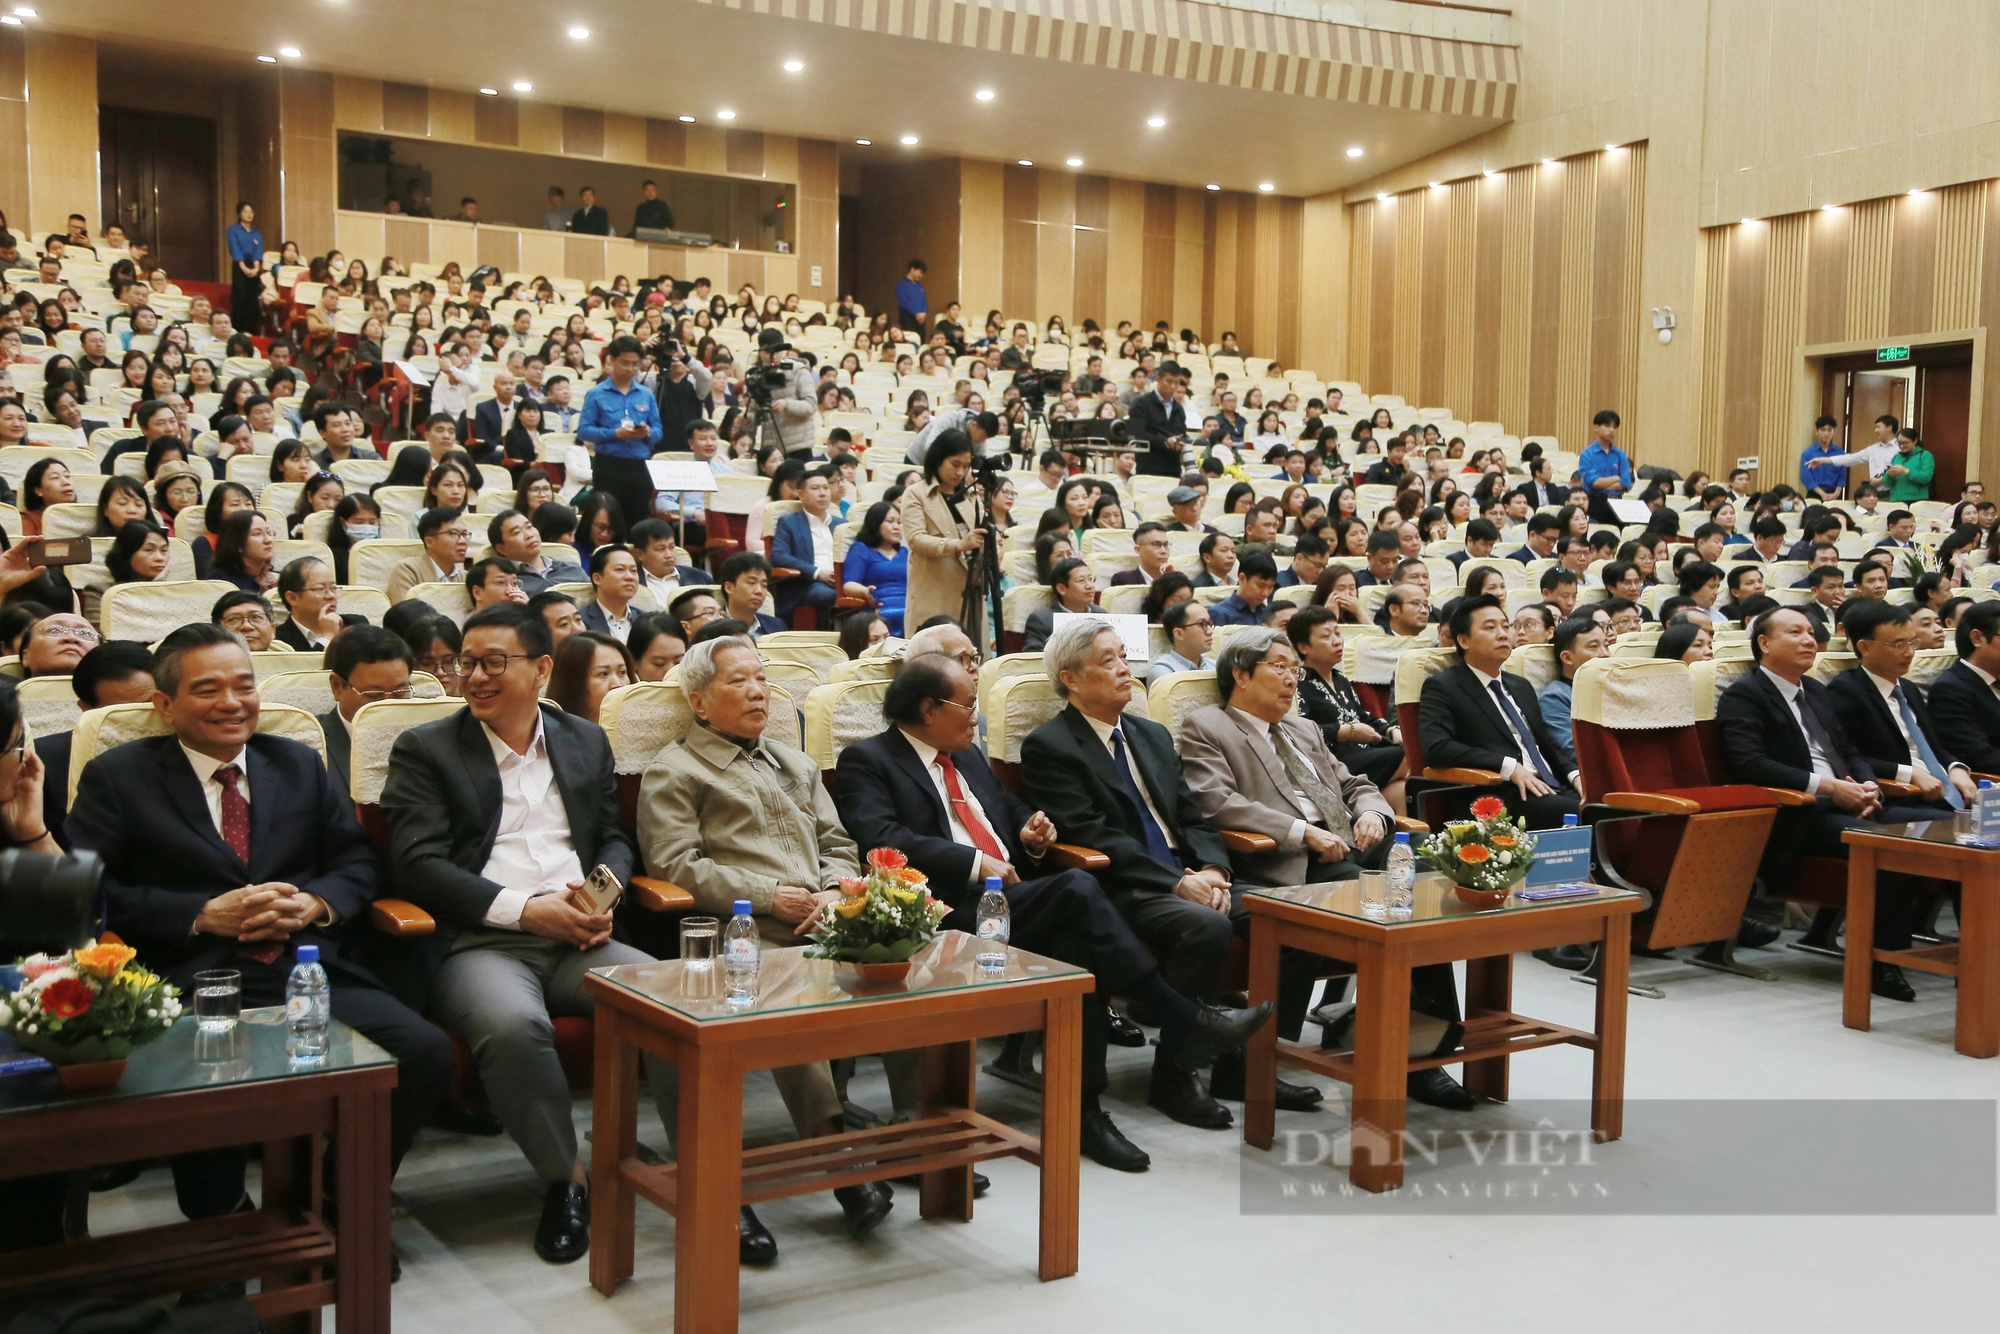 Bài phát biểu đáng nhớ của tân Chủ tịch Hội đồng Trường Đại học Sư phạm Hà Nội- Ảnh 3.